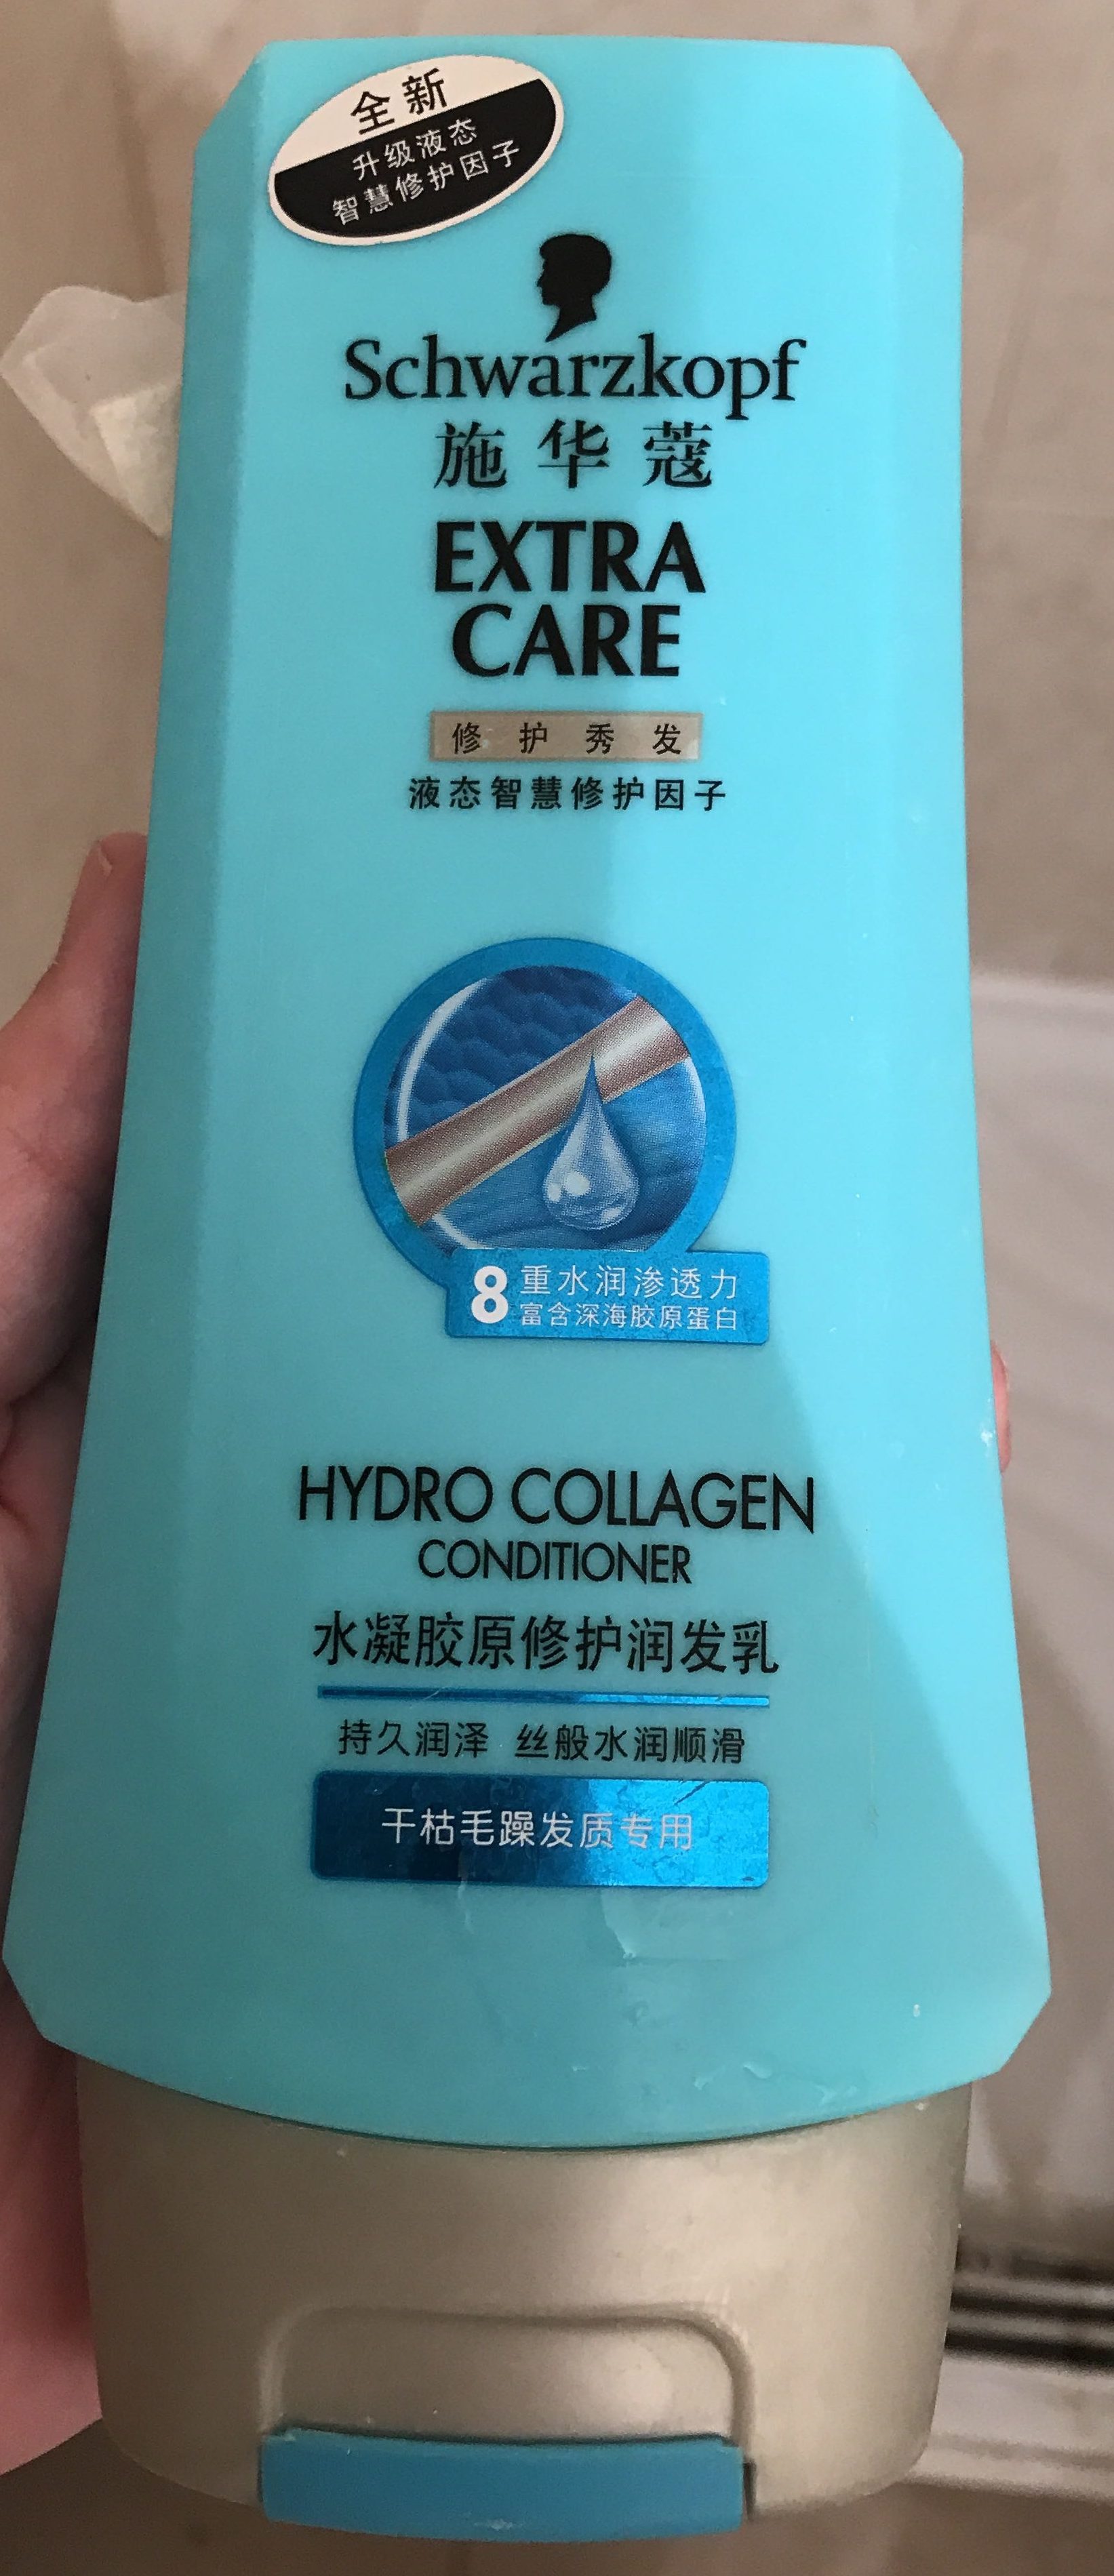 Extra Care 修护润发 Hydro Collagen Conditioner - Tuote - zh